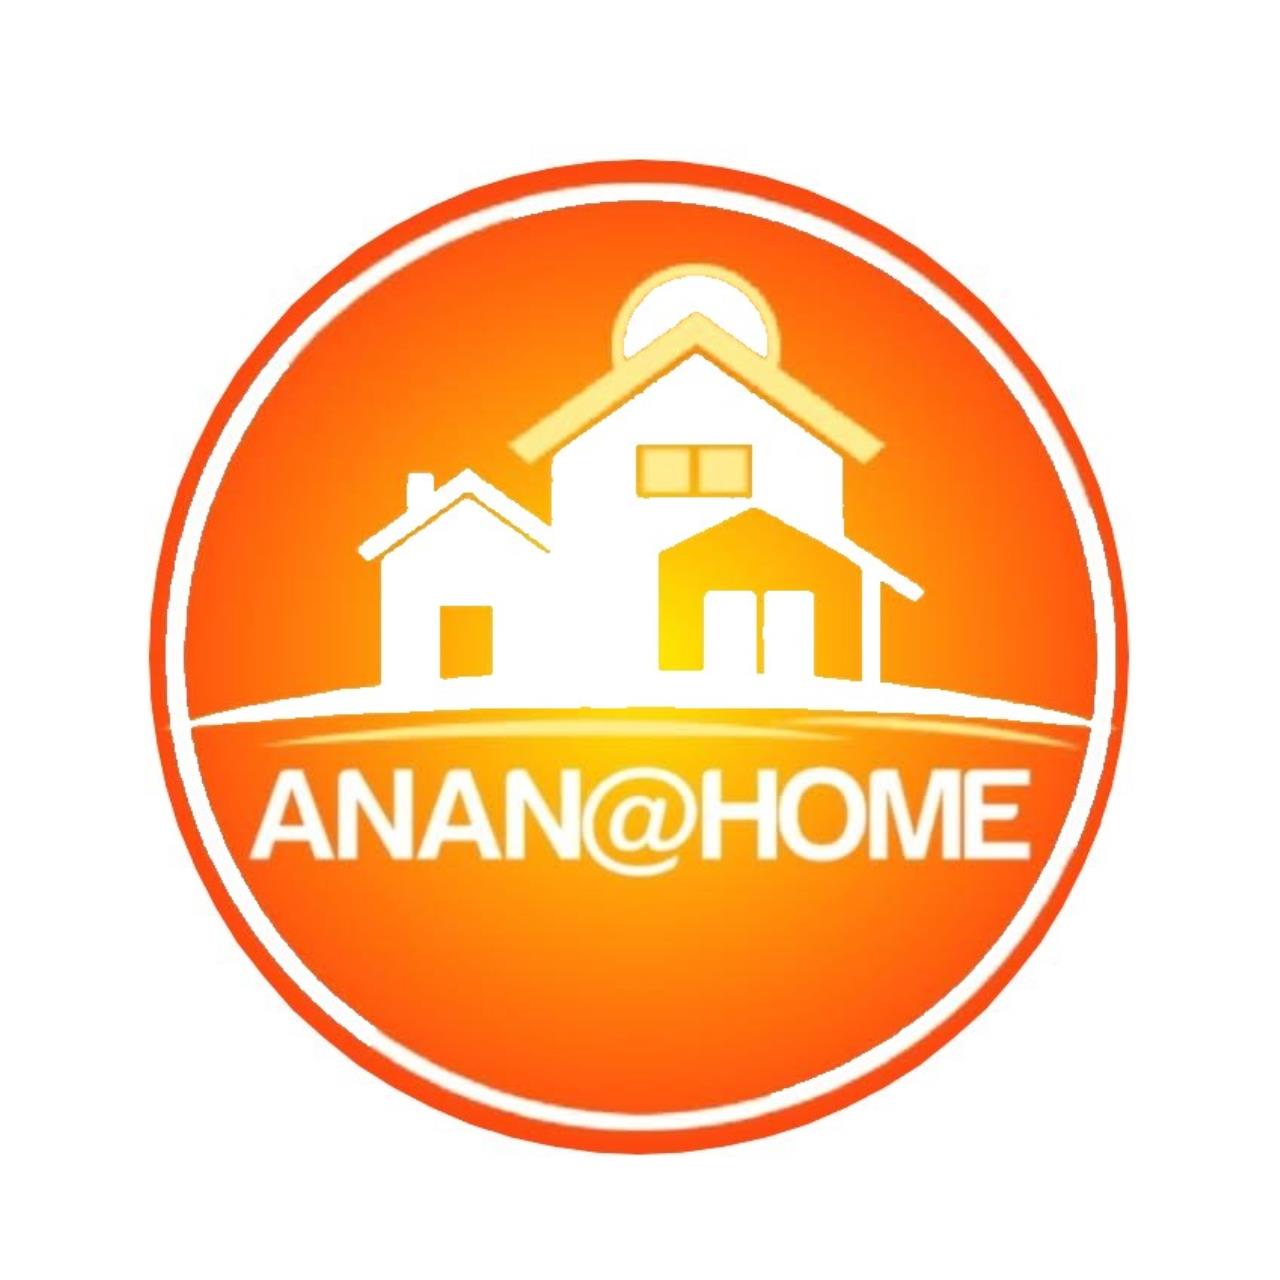 Anan at home property